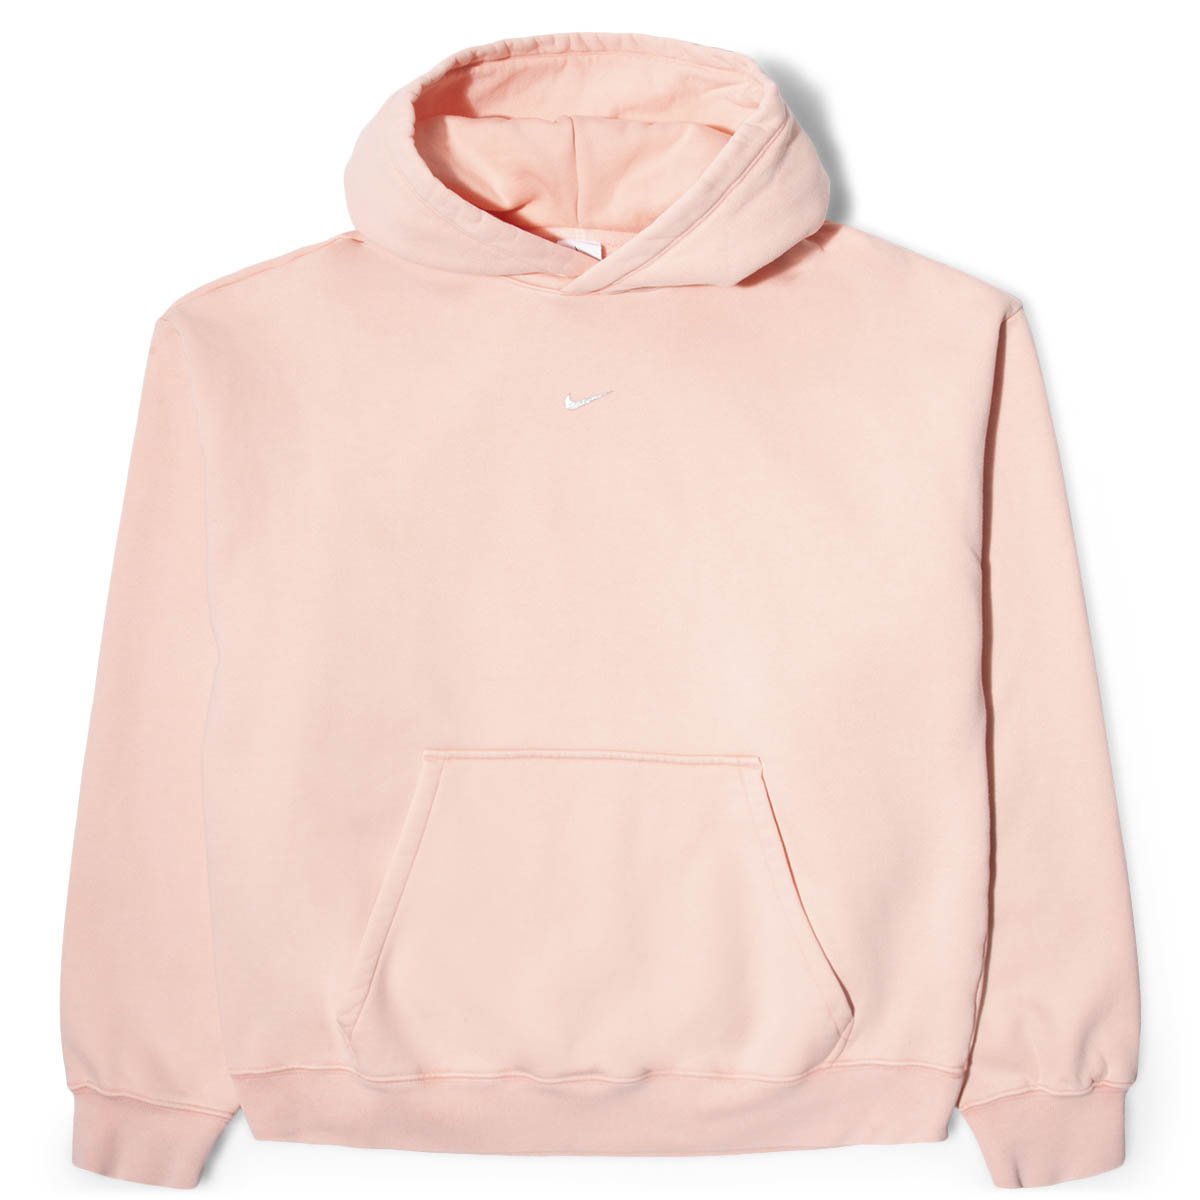 coral pink nike hoodie